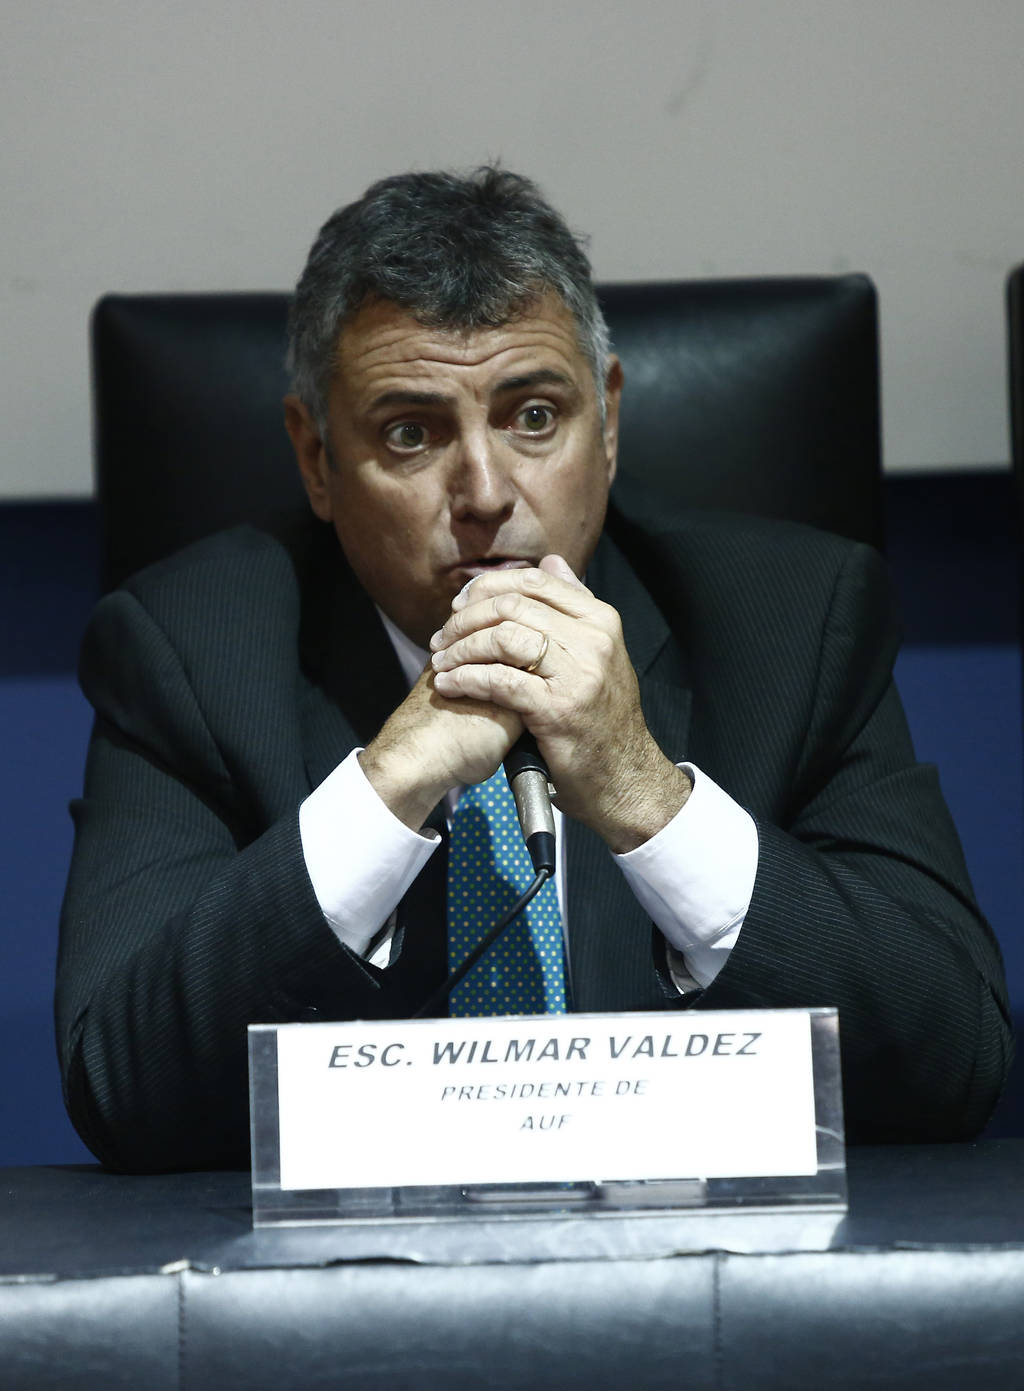 El dirigente uruguayo Wilmar Valdez buscará quedarse con la presidencia de la Confederación Sudamericana de futbol. (EFE)